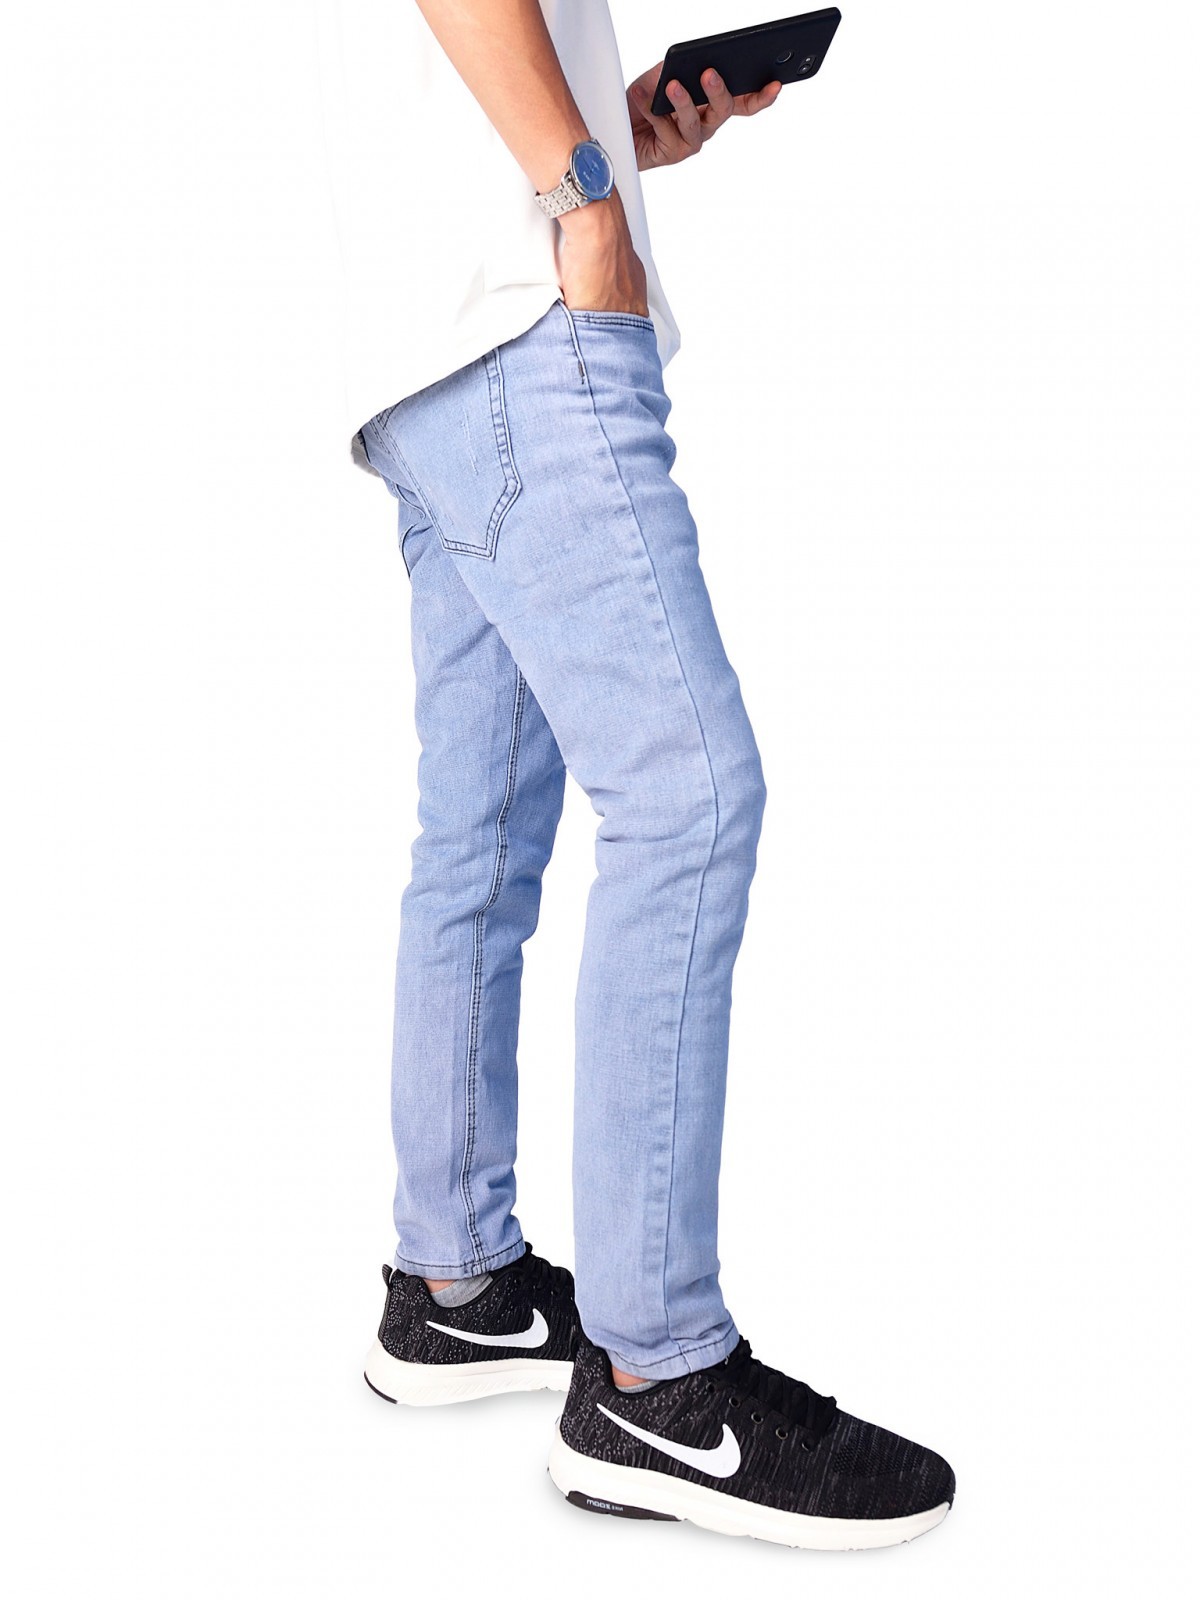 Quần jeans ống côn phù hợp với mọi dáng người